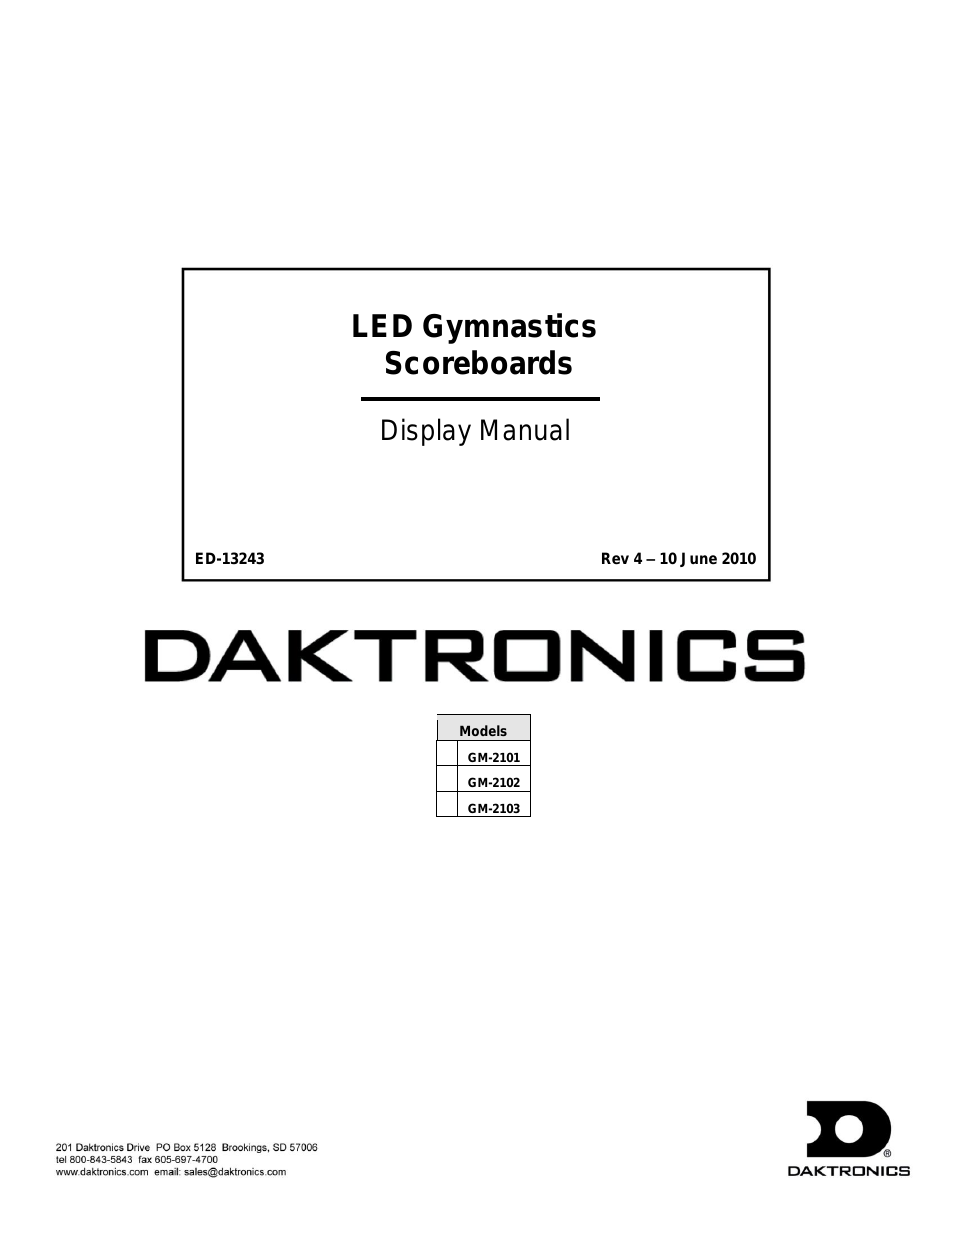 GM-2101 LED Gymnastics Scoreboards